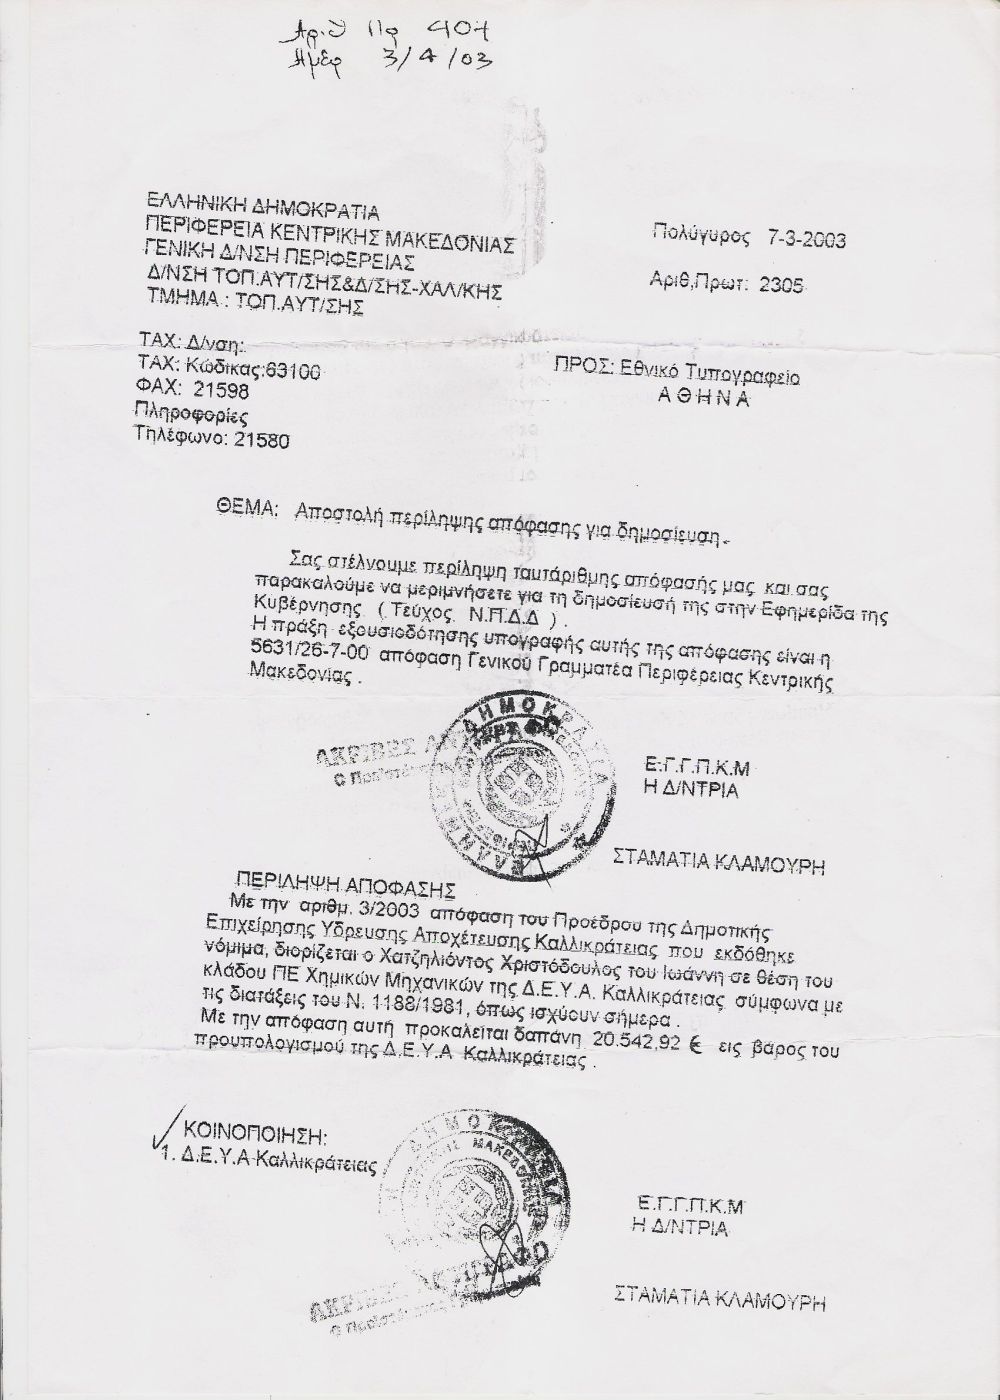 2003 - Έλεγχος διορισμού του χημικού μηχανικού από την Περιφέρεια Κεντρικής Μακεδονίας και δημοσίευση σε ΦΕΚ